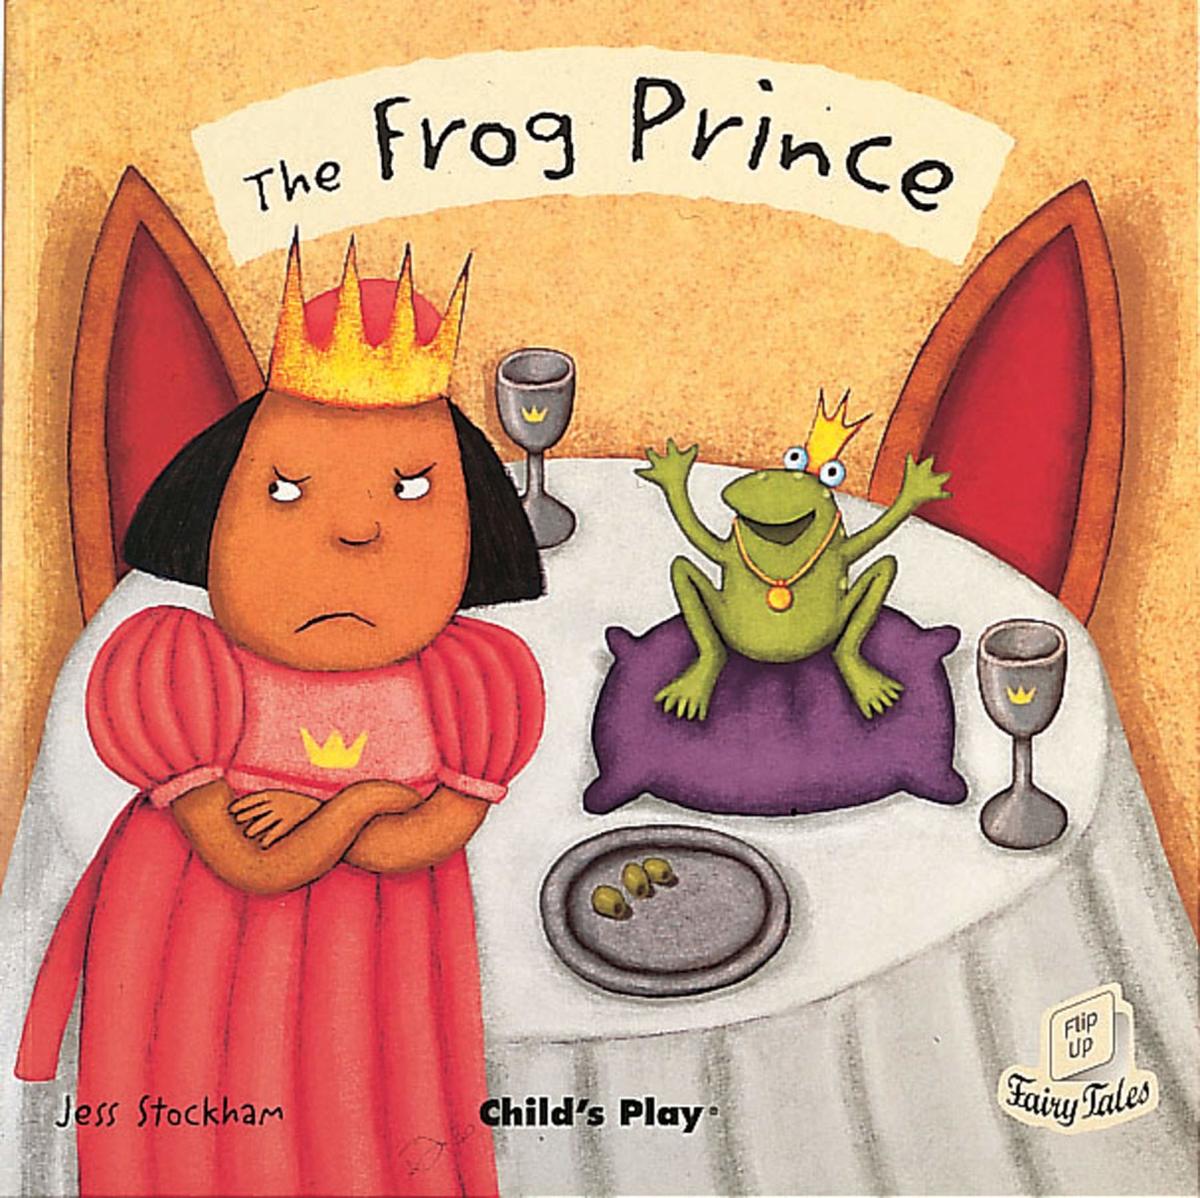 《青蛙王子》是一个更适合学龄前儿童的青蛙童话故事。